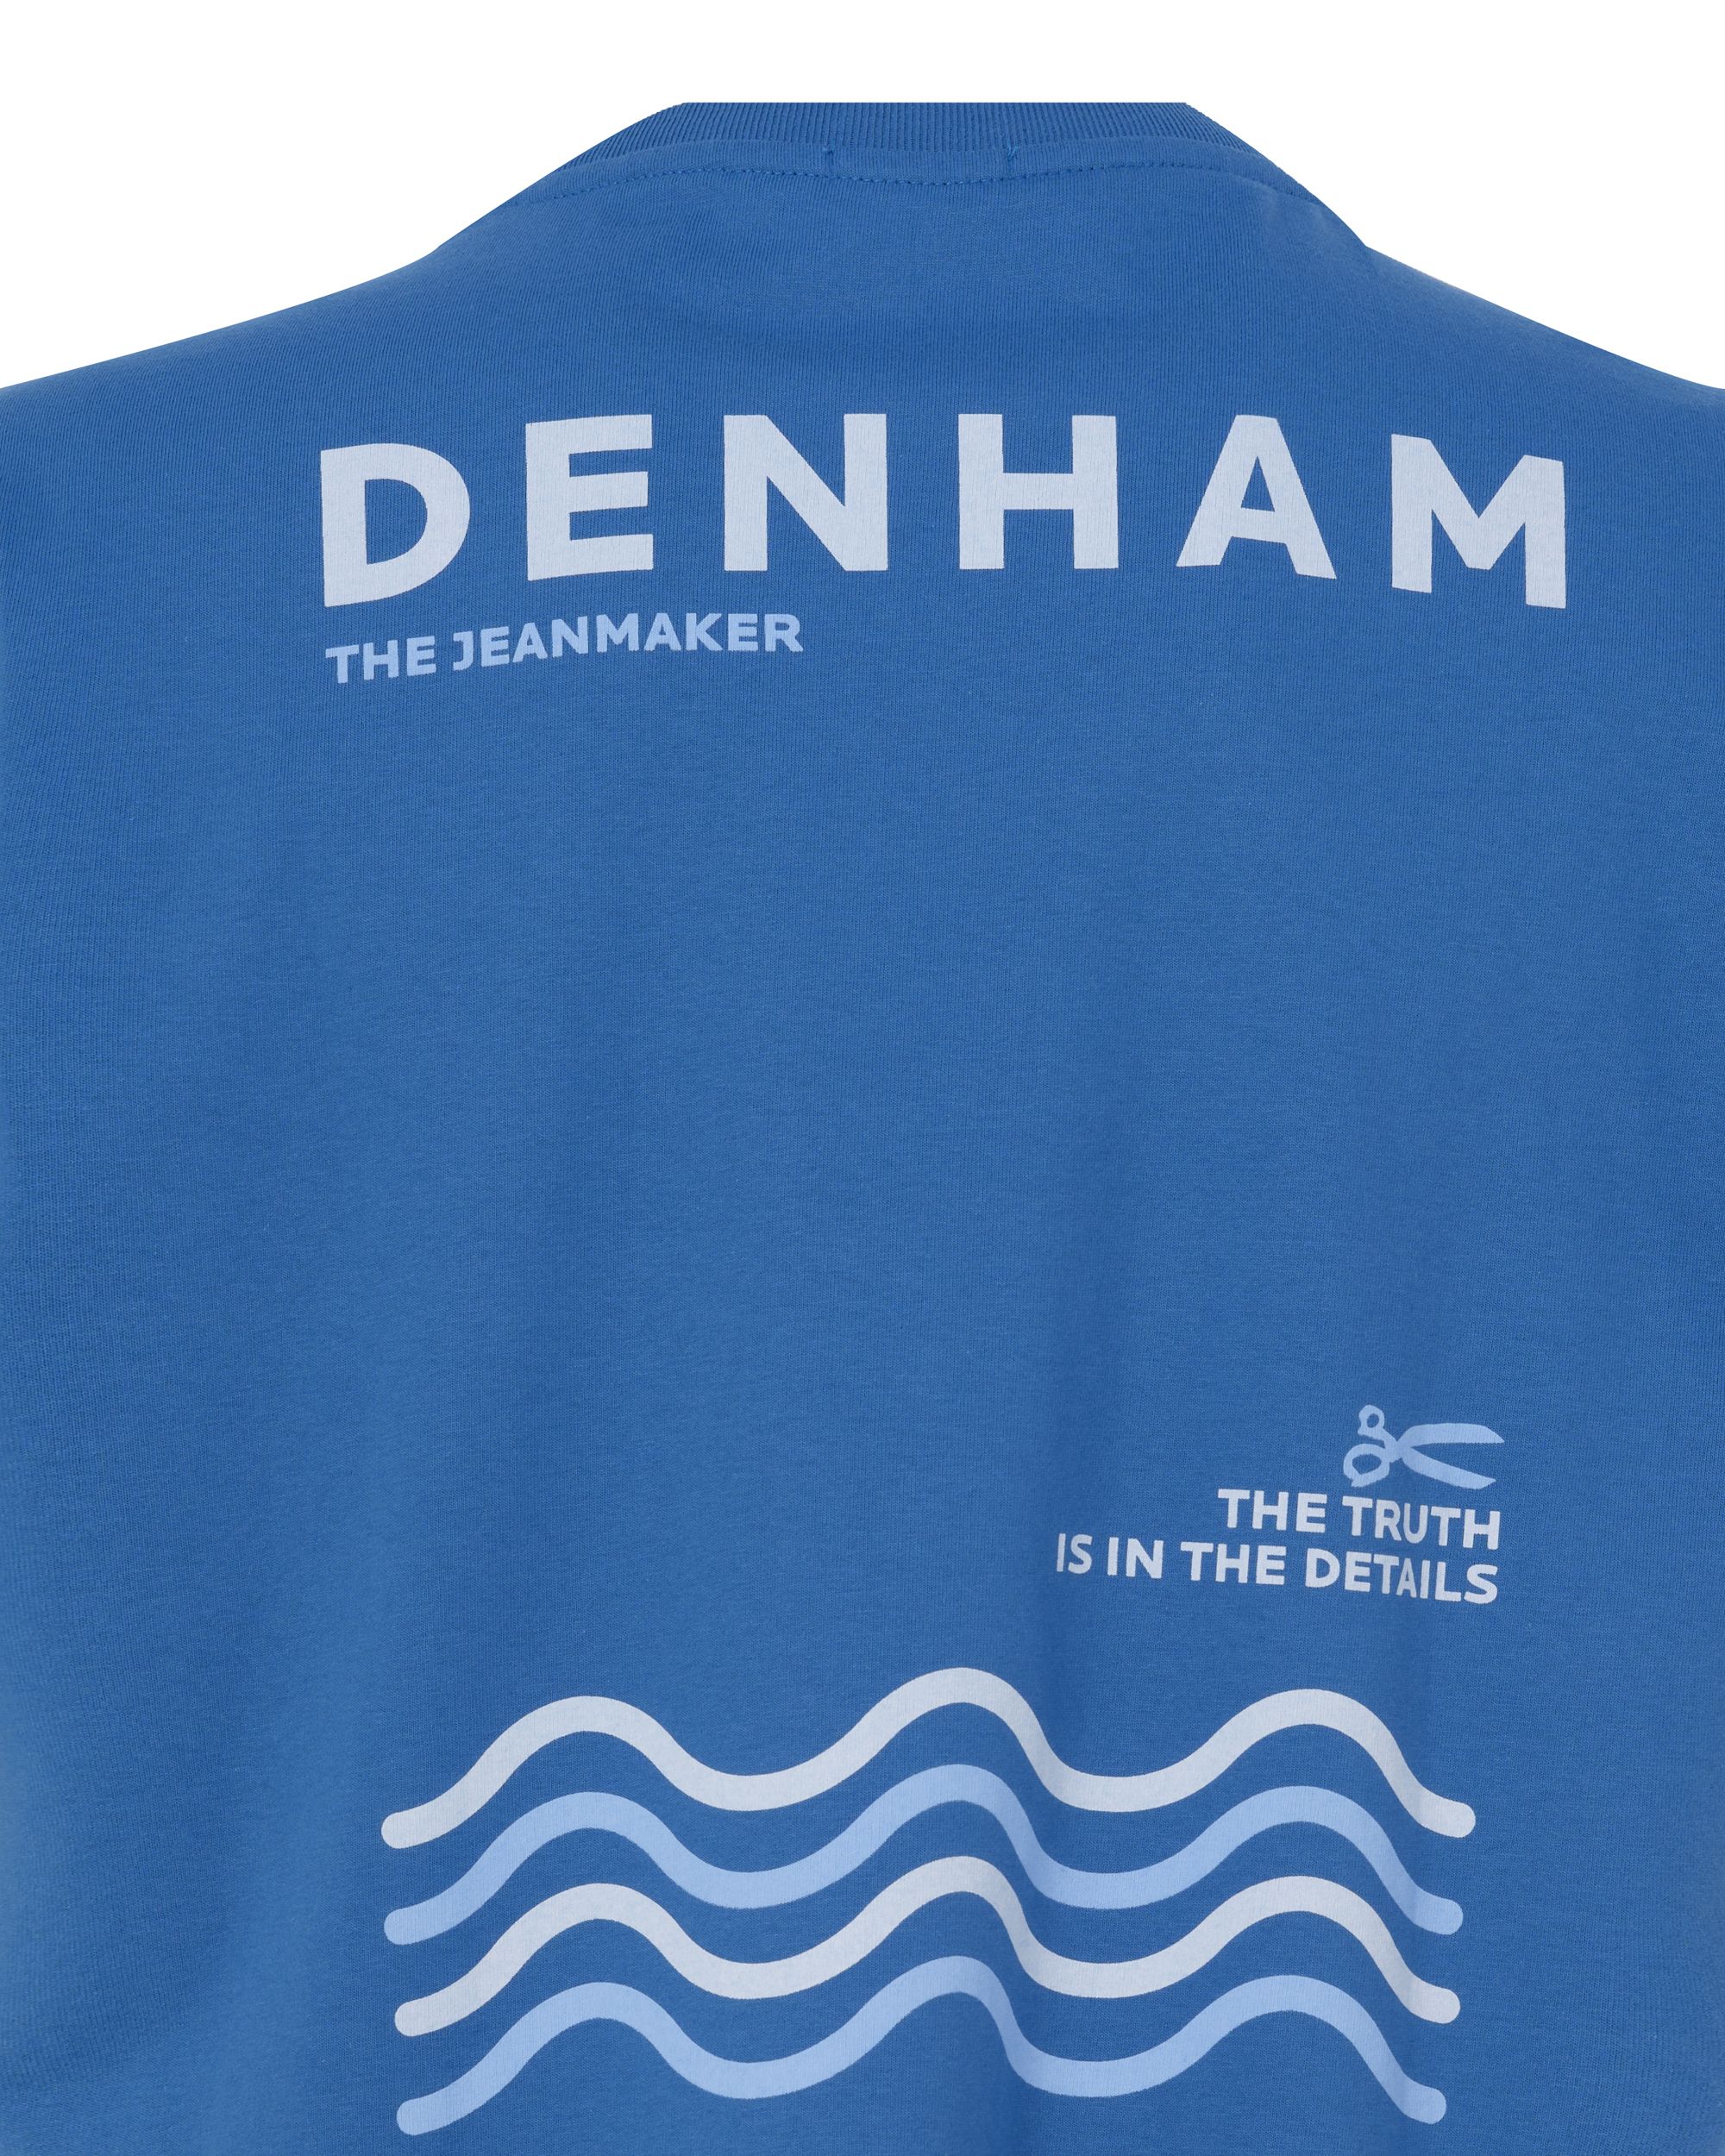 DENHAM House Box T-shirt KM Kobalt 089112-001-L